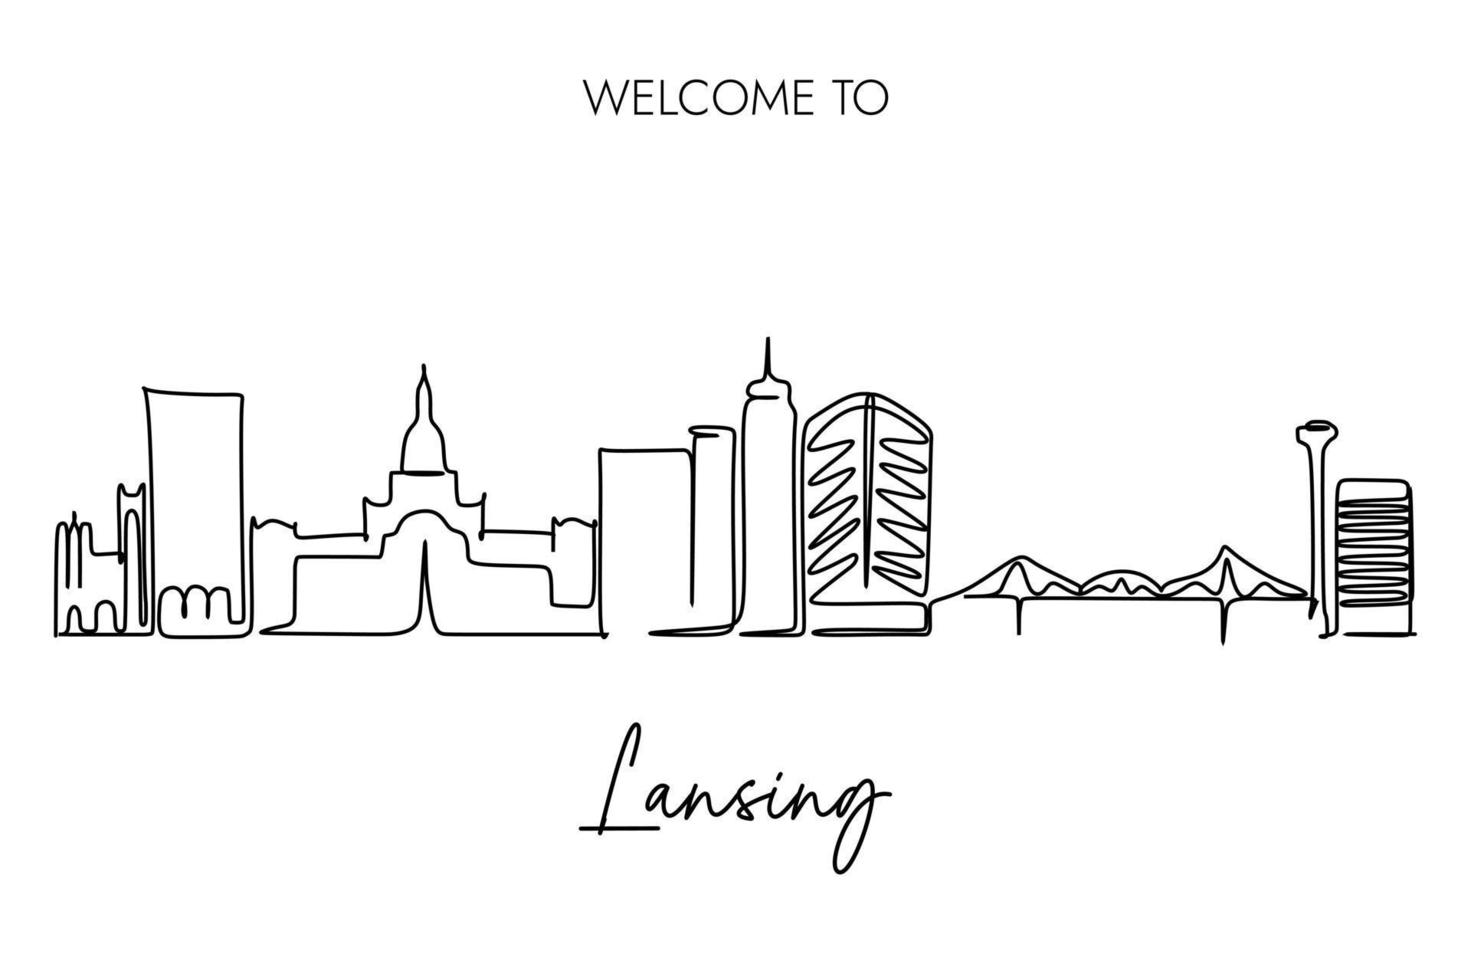 fortlaufende einzeilige zeichnung der skyline von lansing mit willkommen beim texten von lansing. handzeichnungsstildesign für die hauptstadt von michigan tourismuskonzept der vereinigten staaten von amerika. vektor